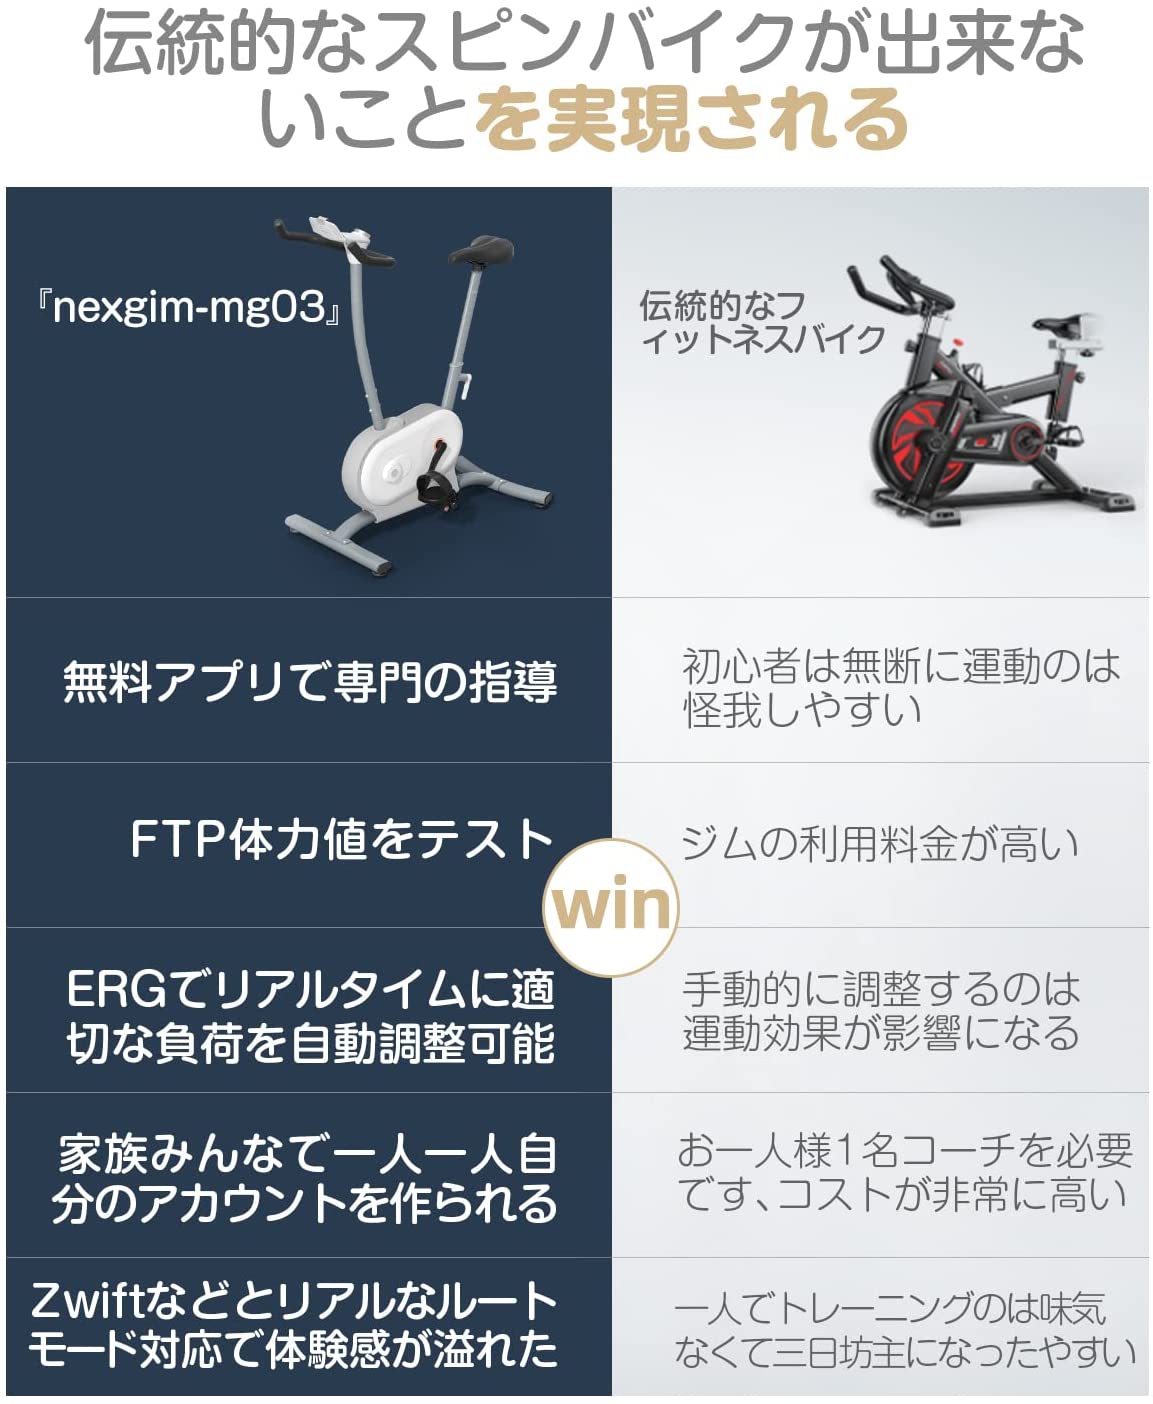 フィットネスバイク AI nexgim mg03 -zepan -zepan